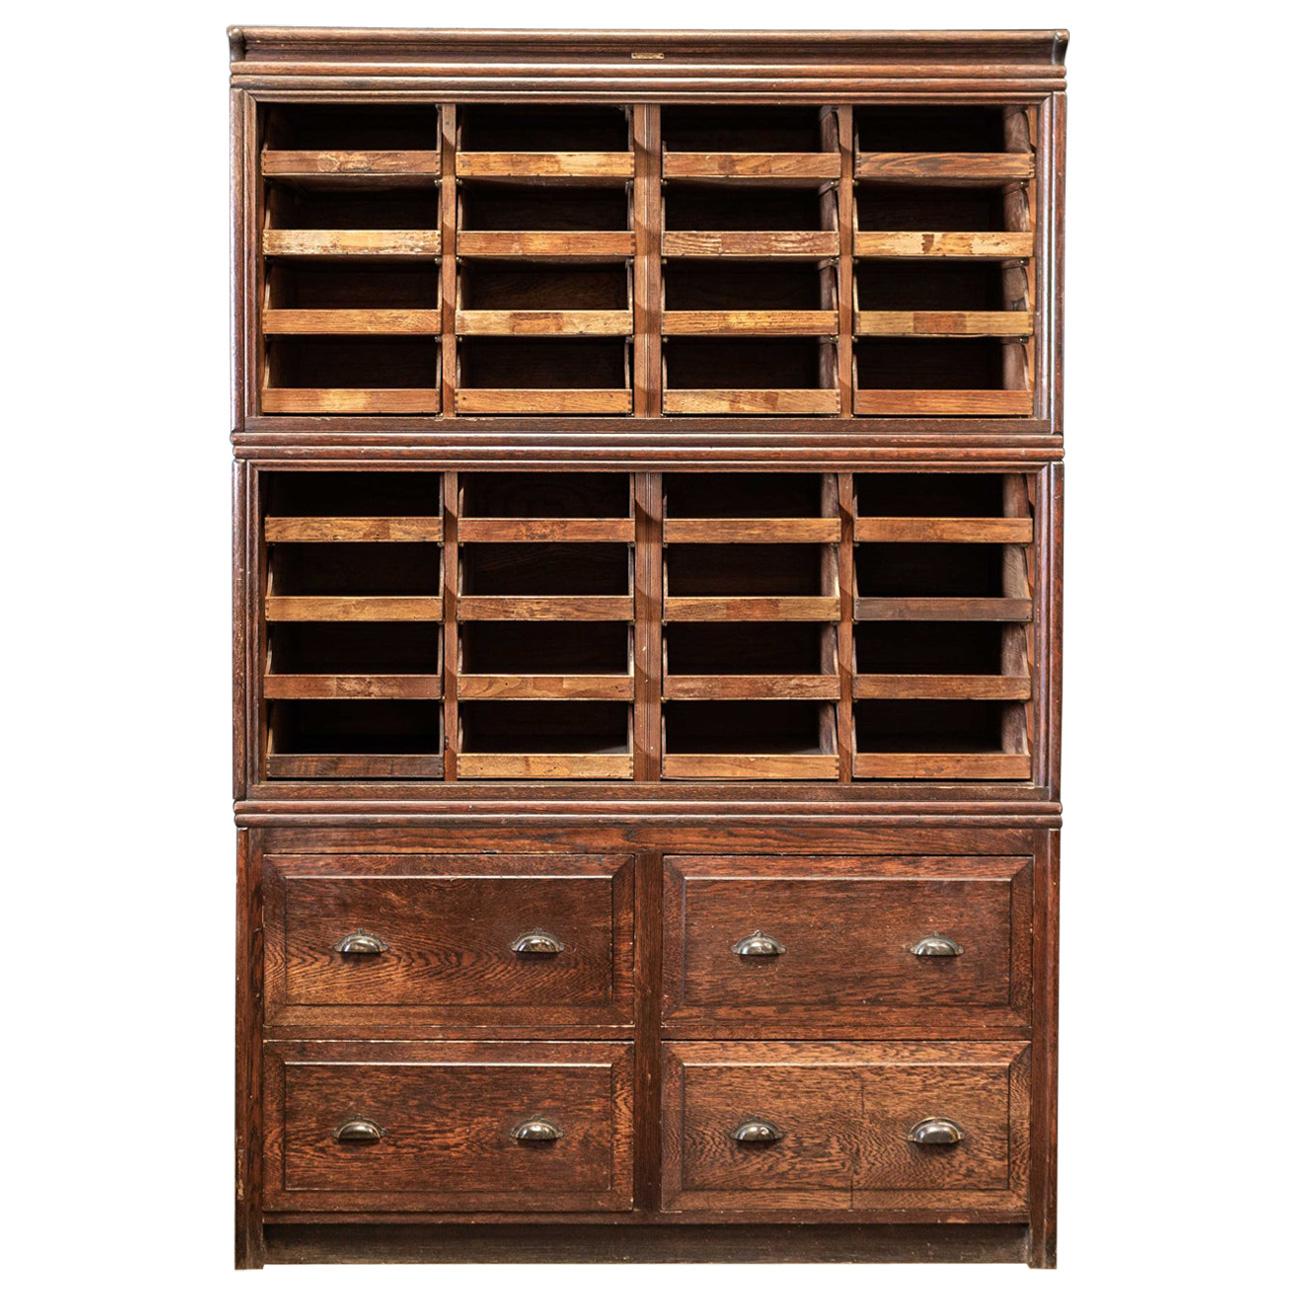 Large English Oak Haberdashery Shop fitters Cabinet